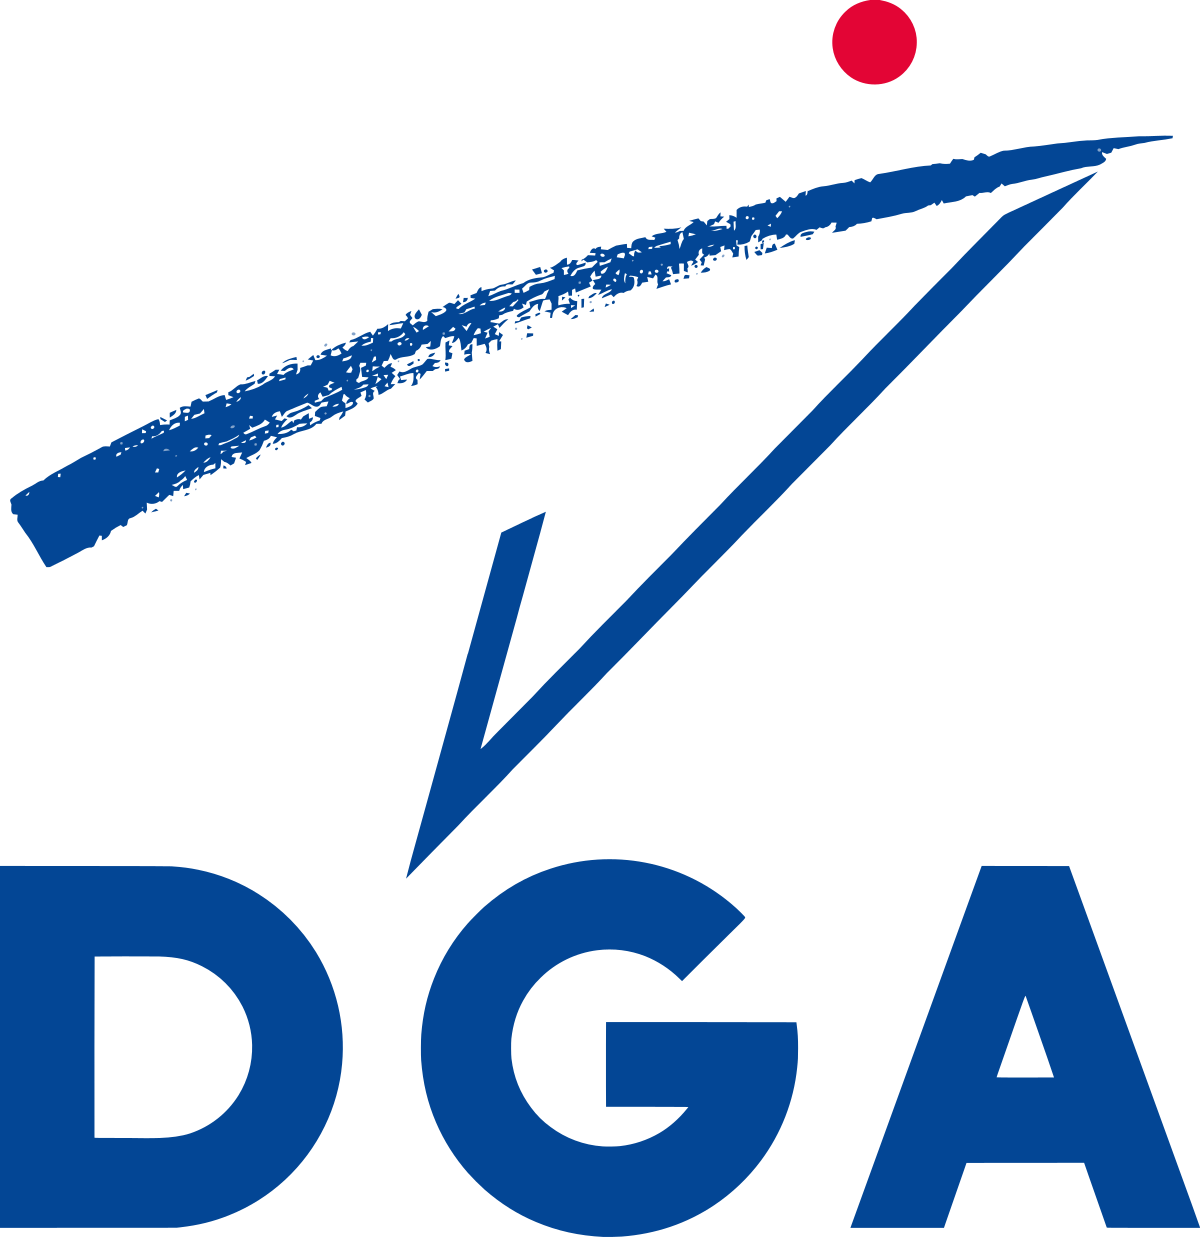 Logo DGA Direction générale de l'armement